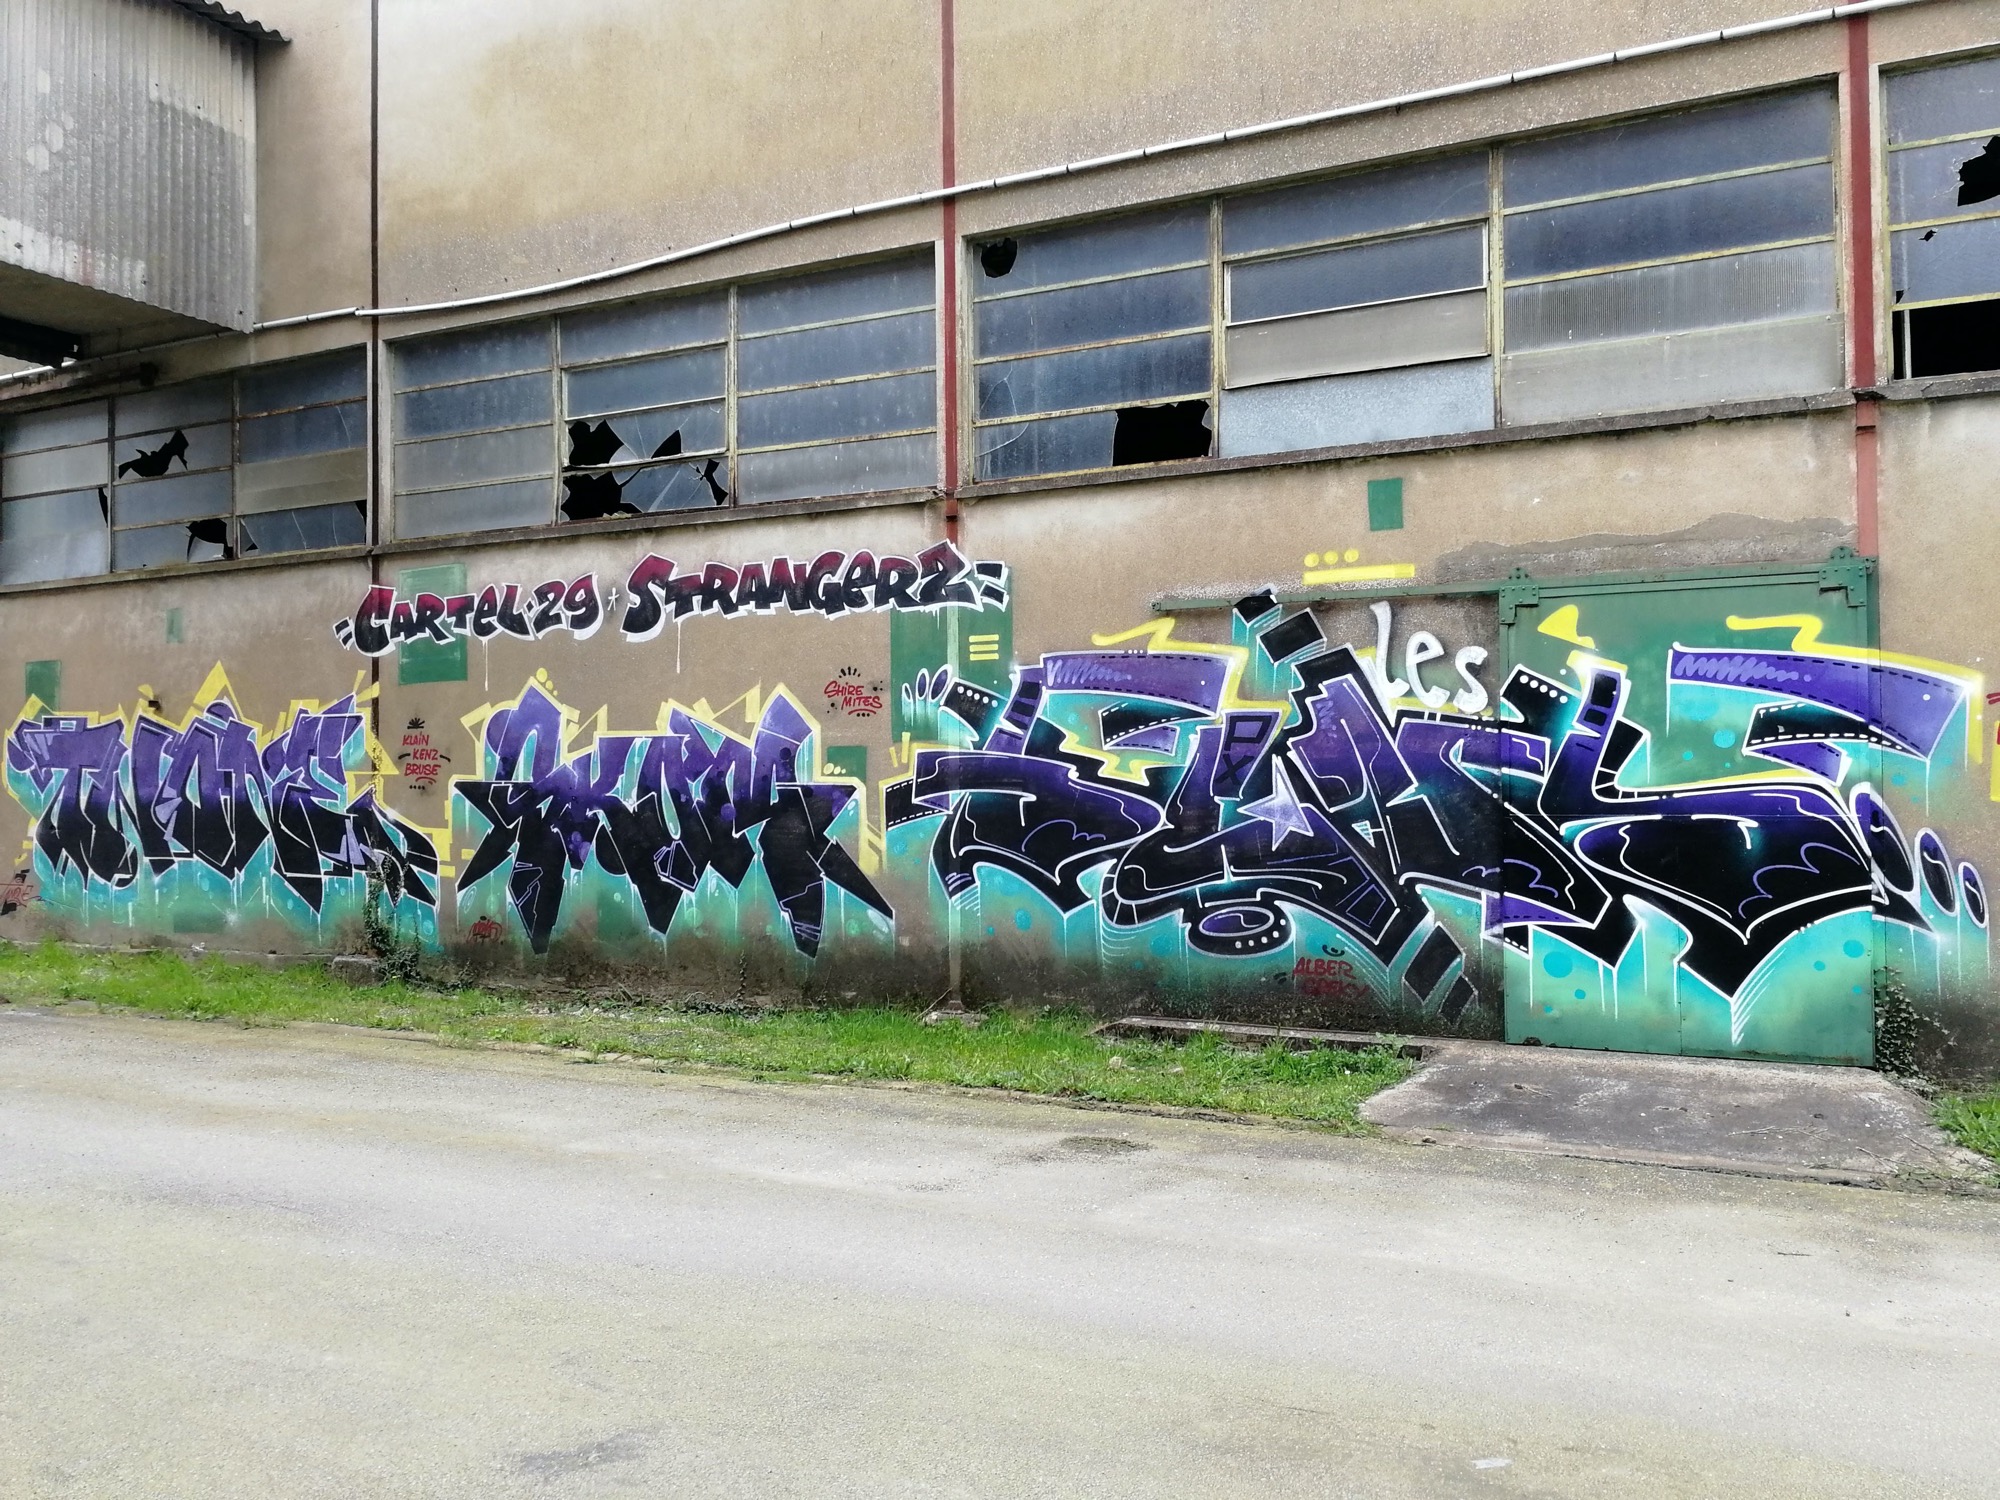 Graffiti 1366 Cartel 29 Stranger 2 capturé par Rabot à Issé France